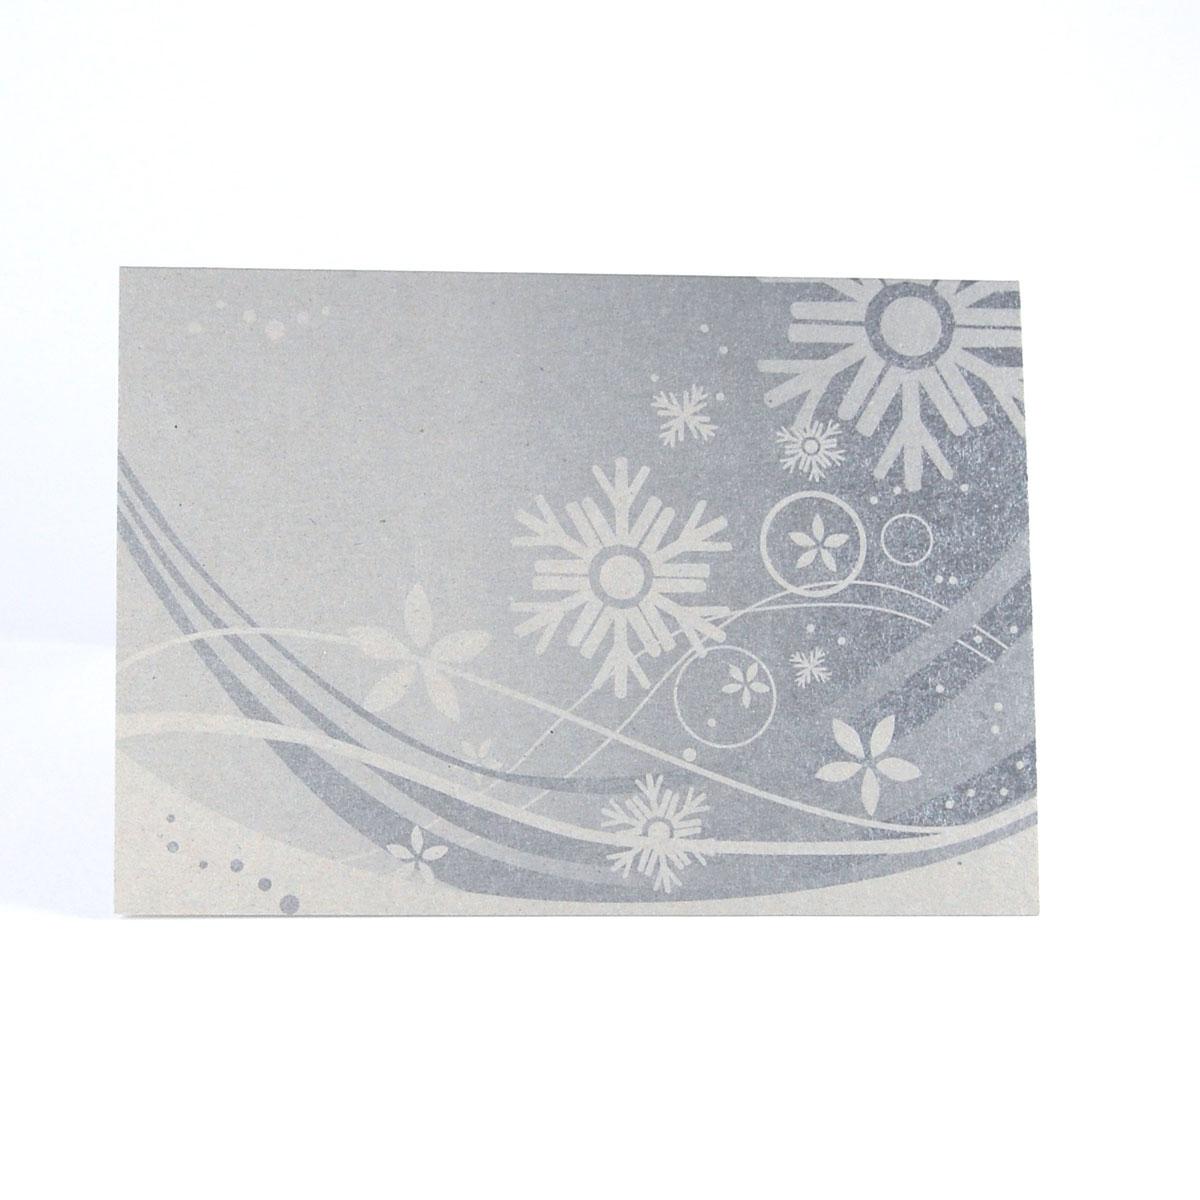 Graupappe-Weihnachtskarte: Schneekristalle (silberner Druck)